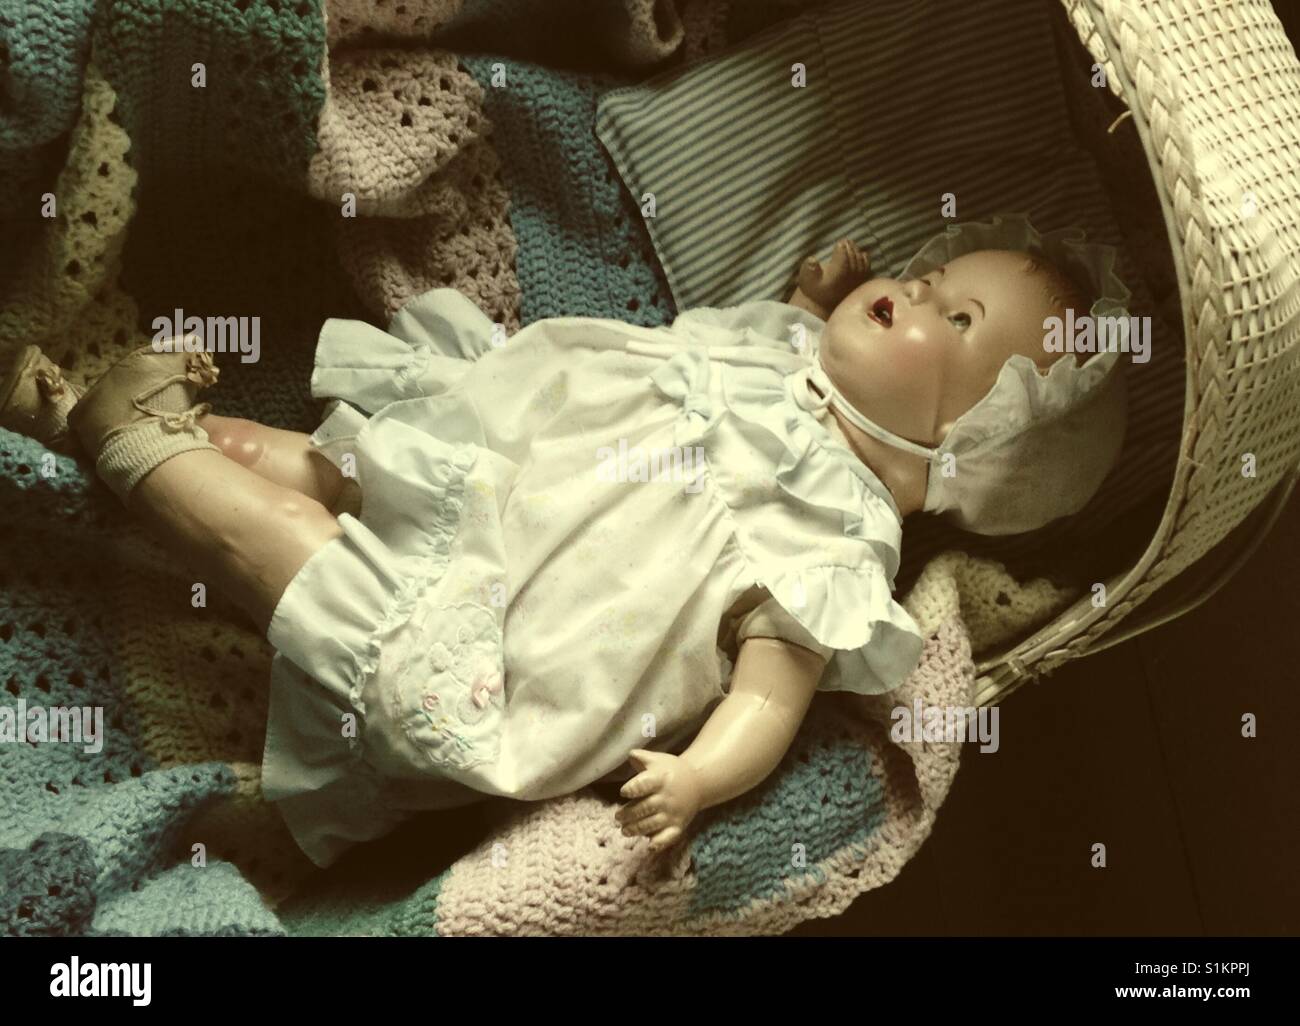 Nicht schläfrig - Doris die Zusammensetzung Puppe kämpfe Schlaf in vintage Babykörbchen Stockfoto